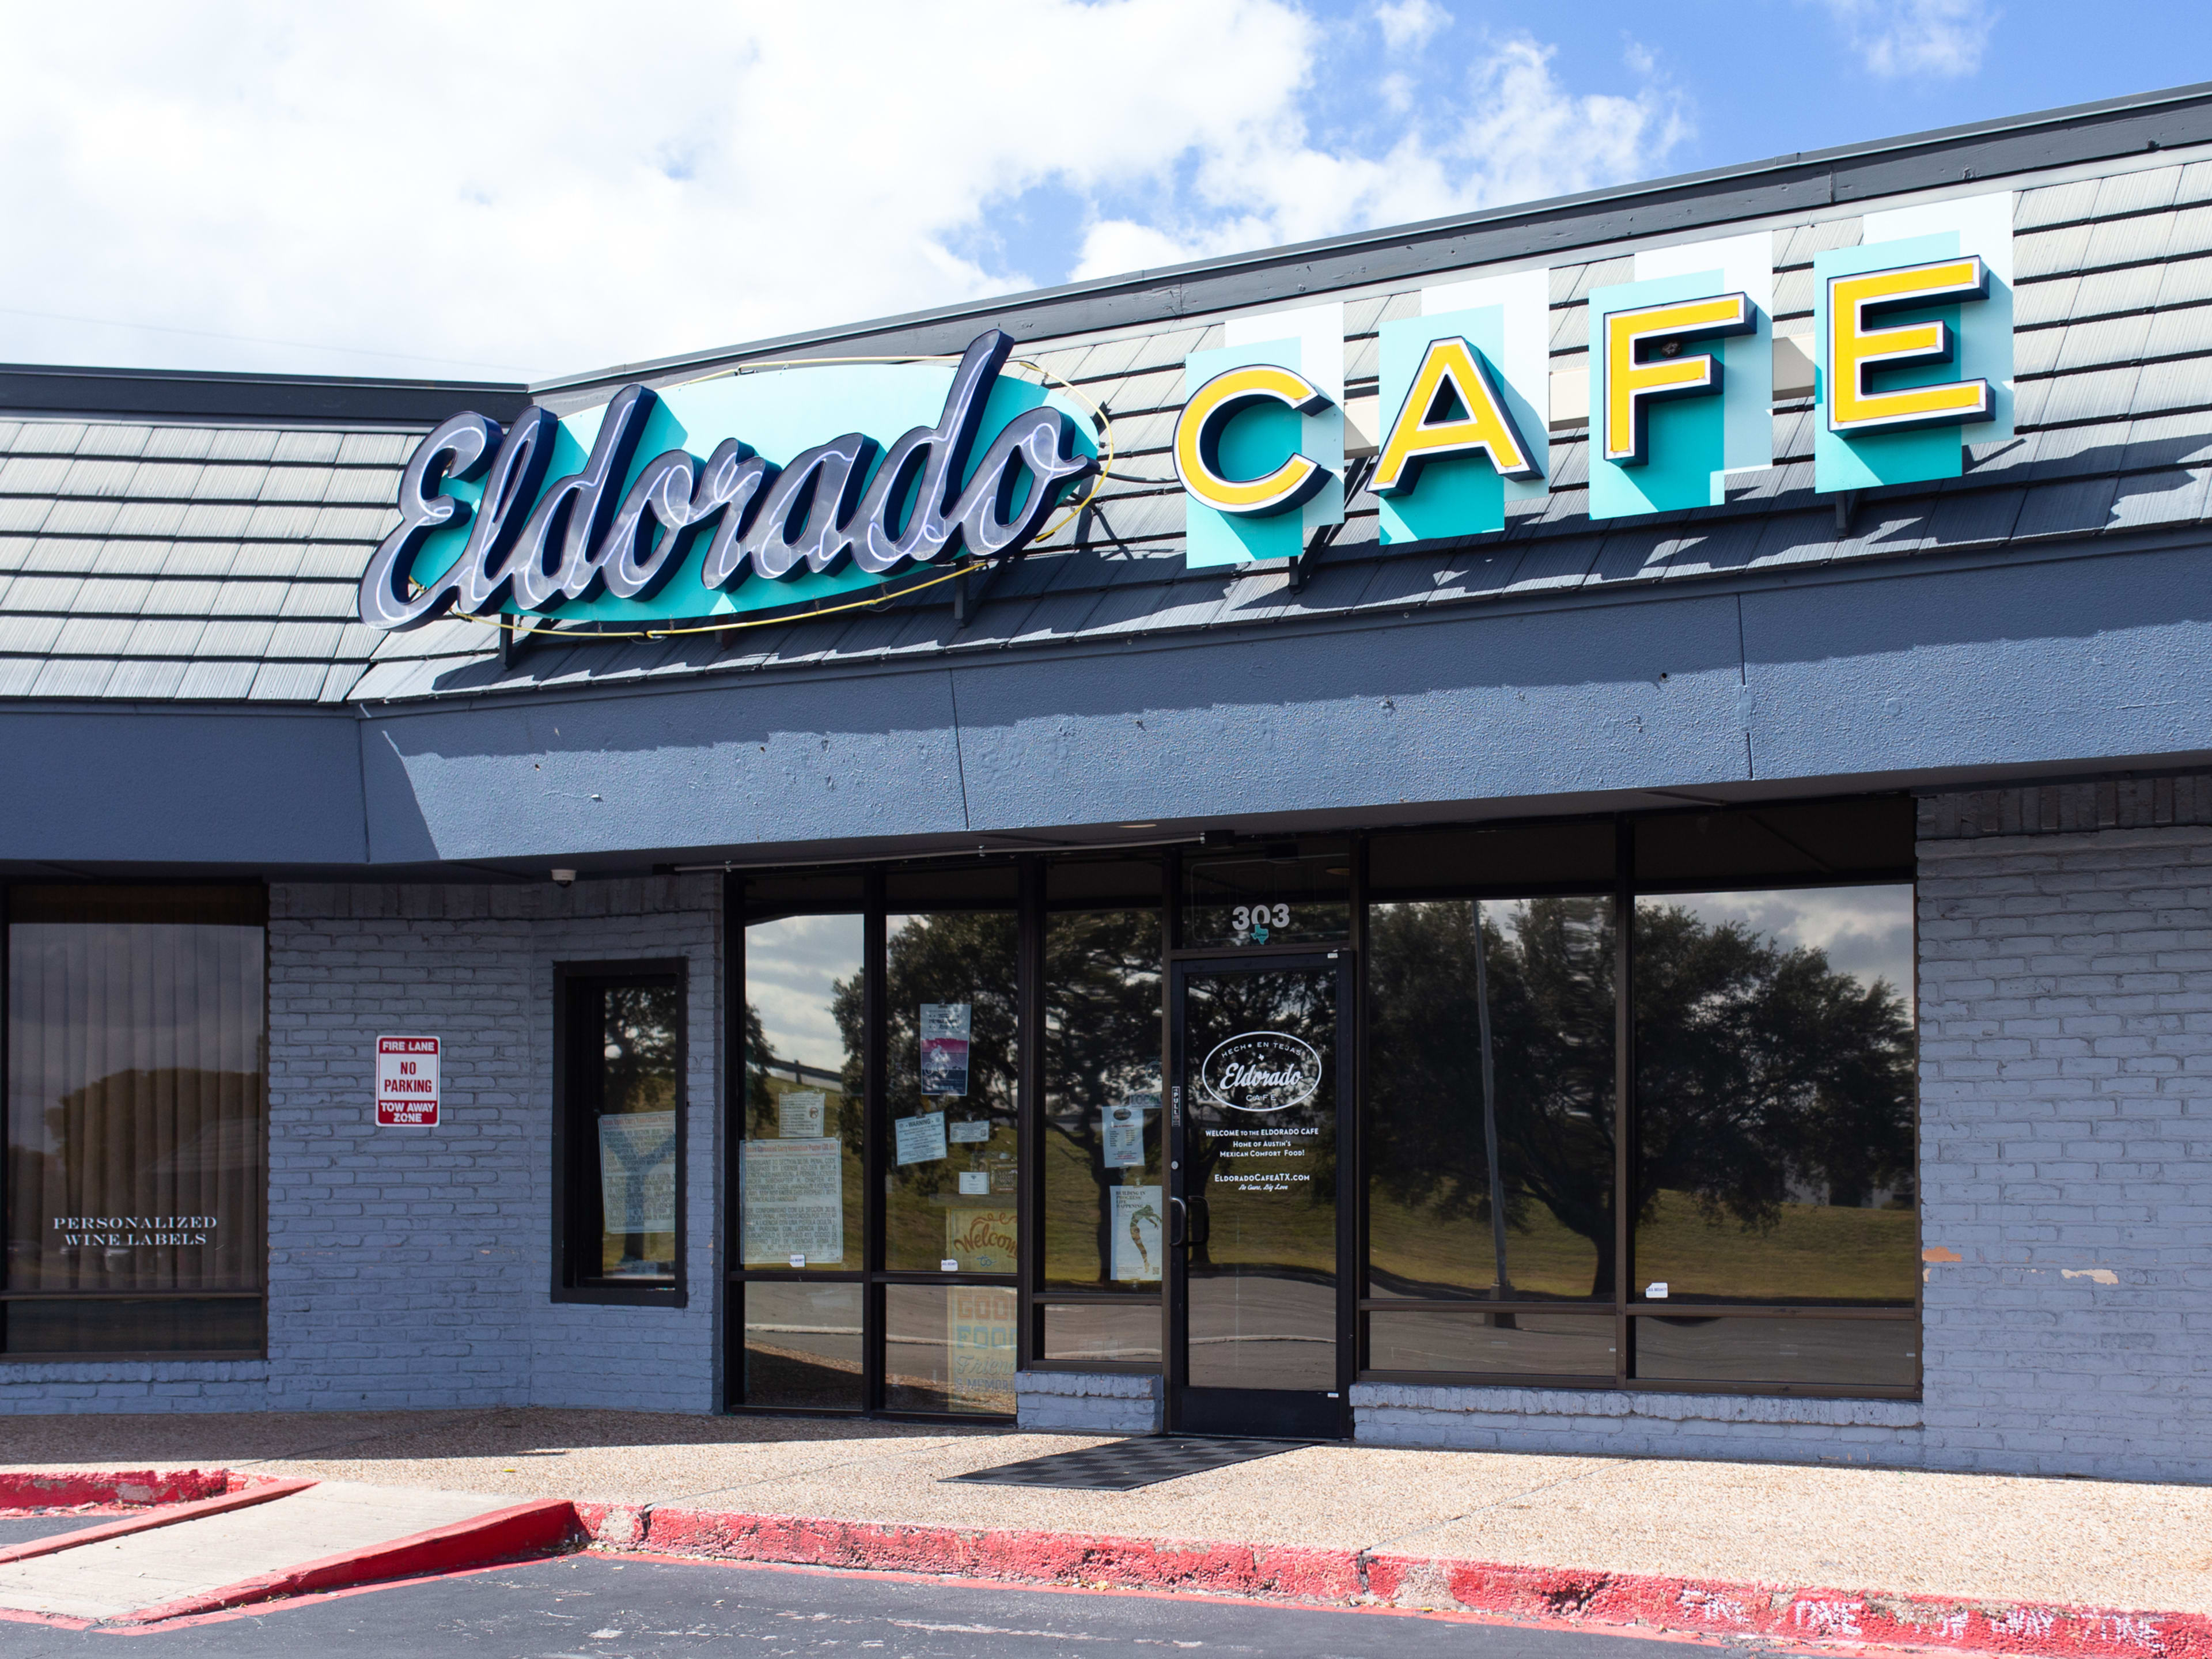 Eldorado Cafe review image